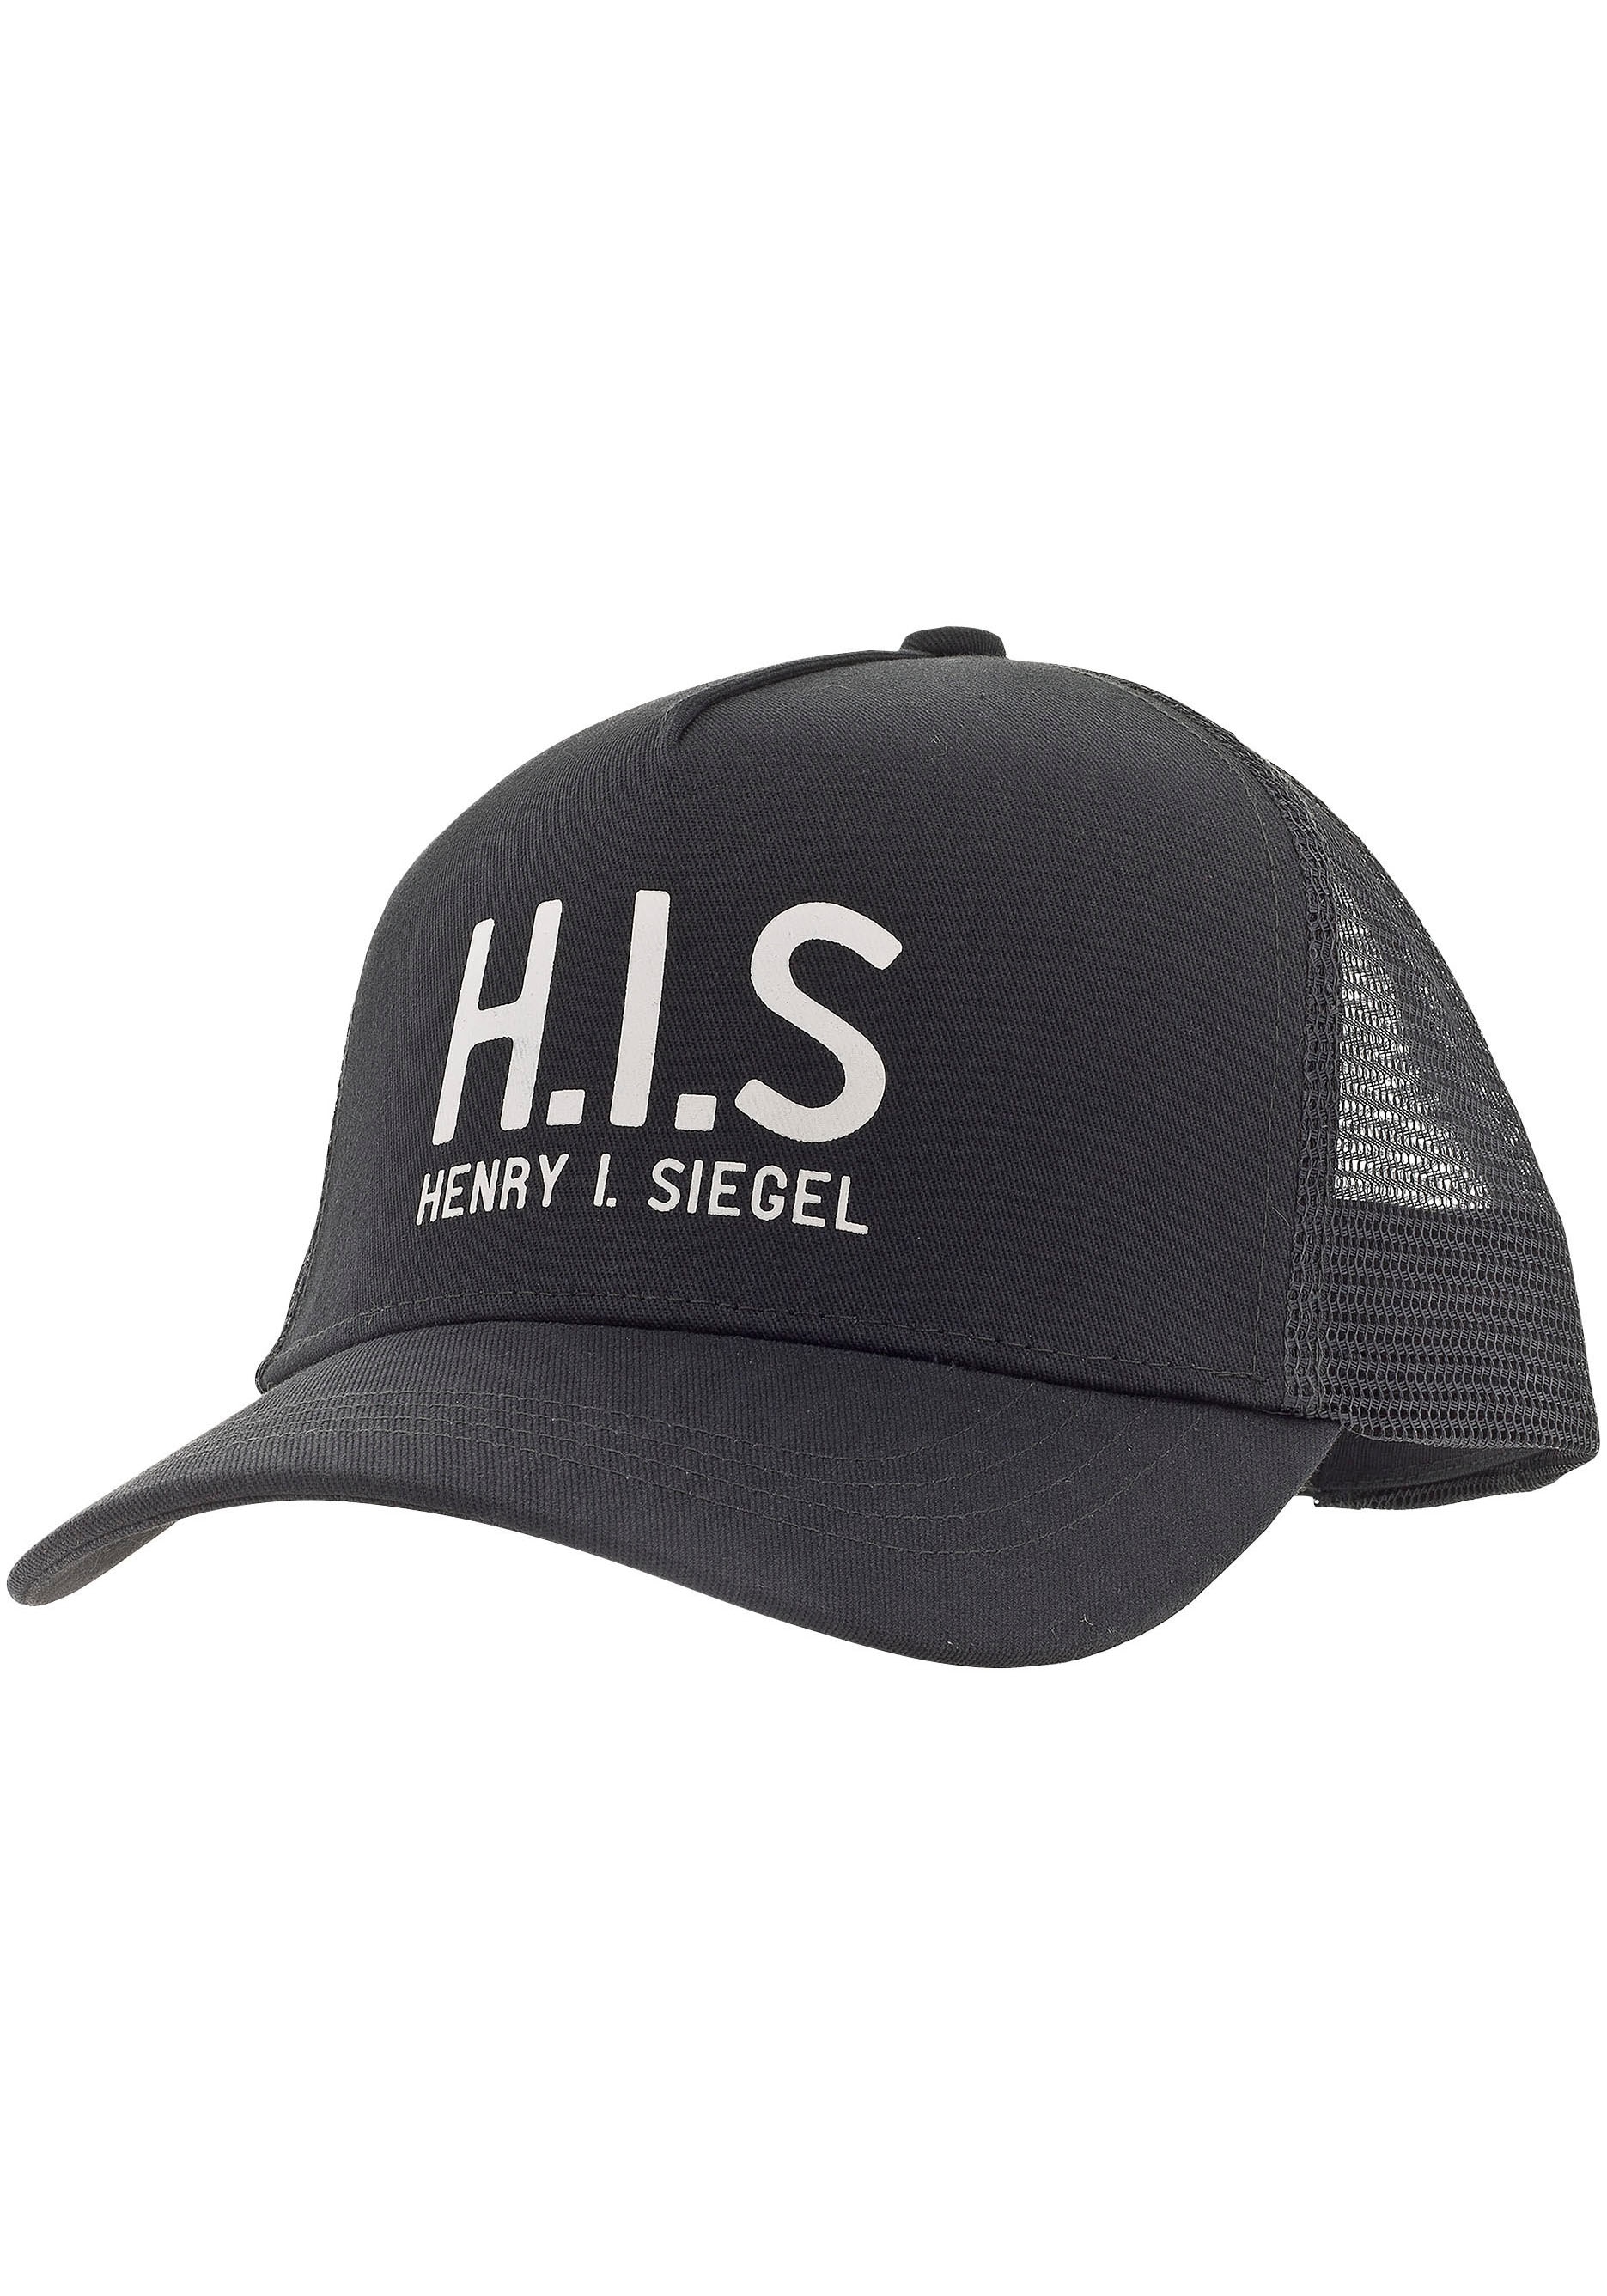 H.I.S Baseball Cap, Mesh-Cap mit H.I.S.-Print online bei OTTO kaufen | OTTO | Baseball Caps